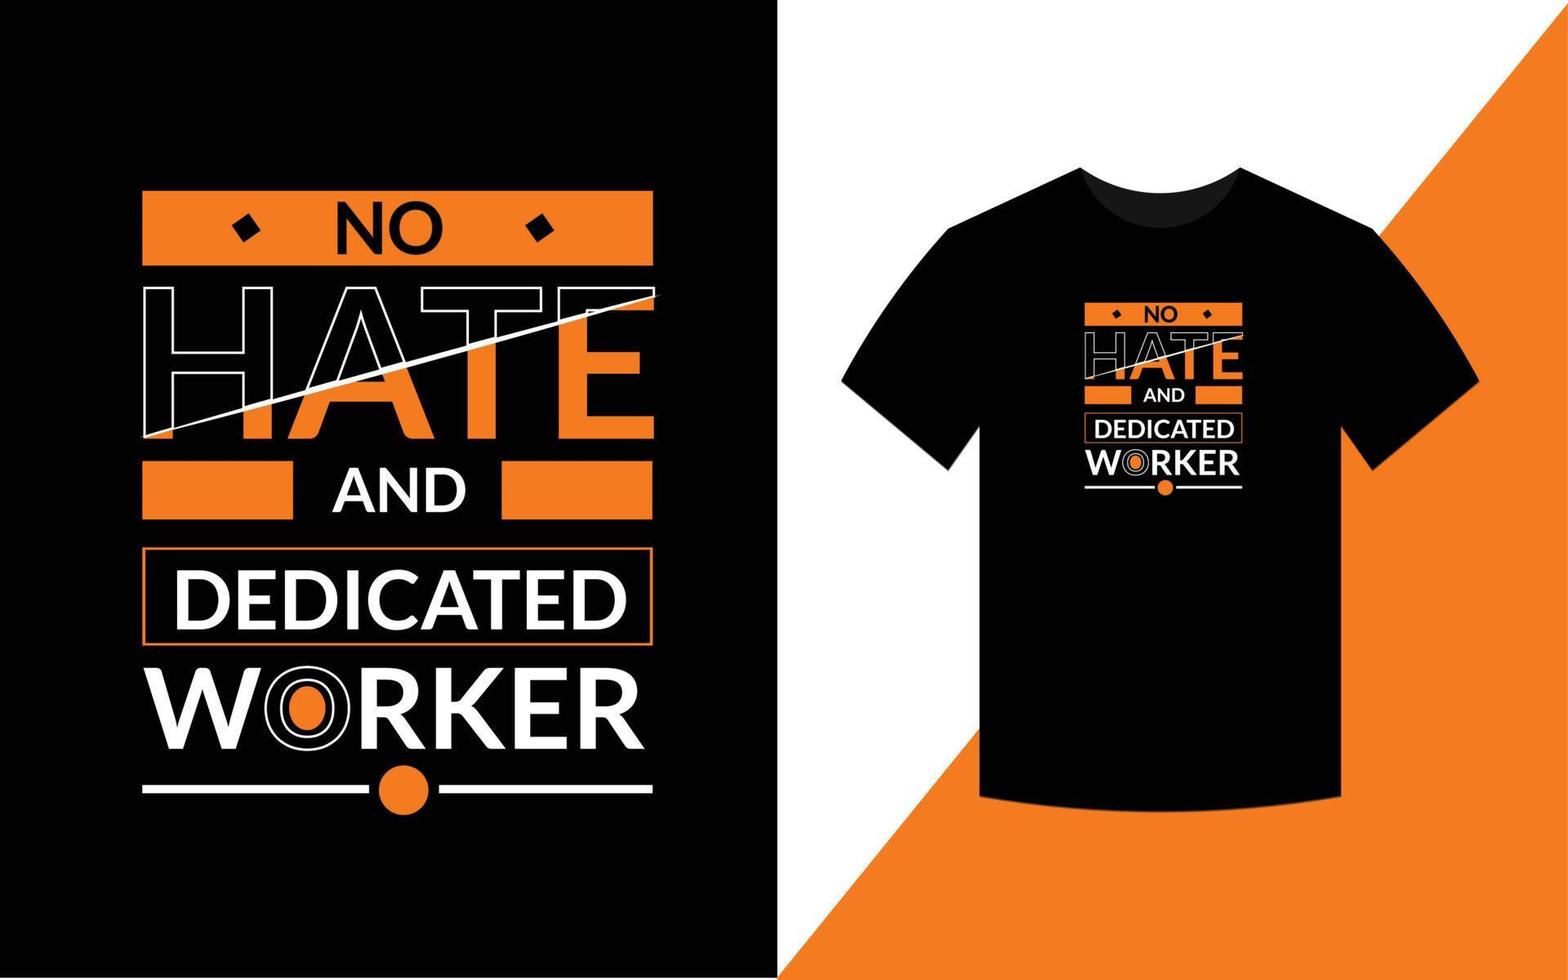 inget hat och hängiven arbetare moderna motiverande citat t-shirt designmall vektor